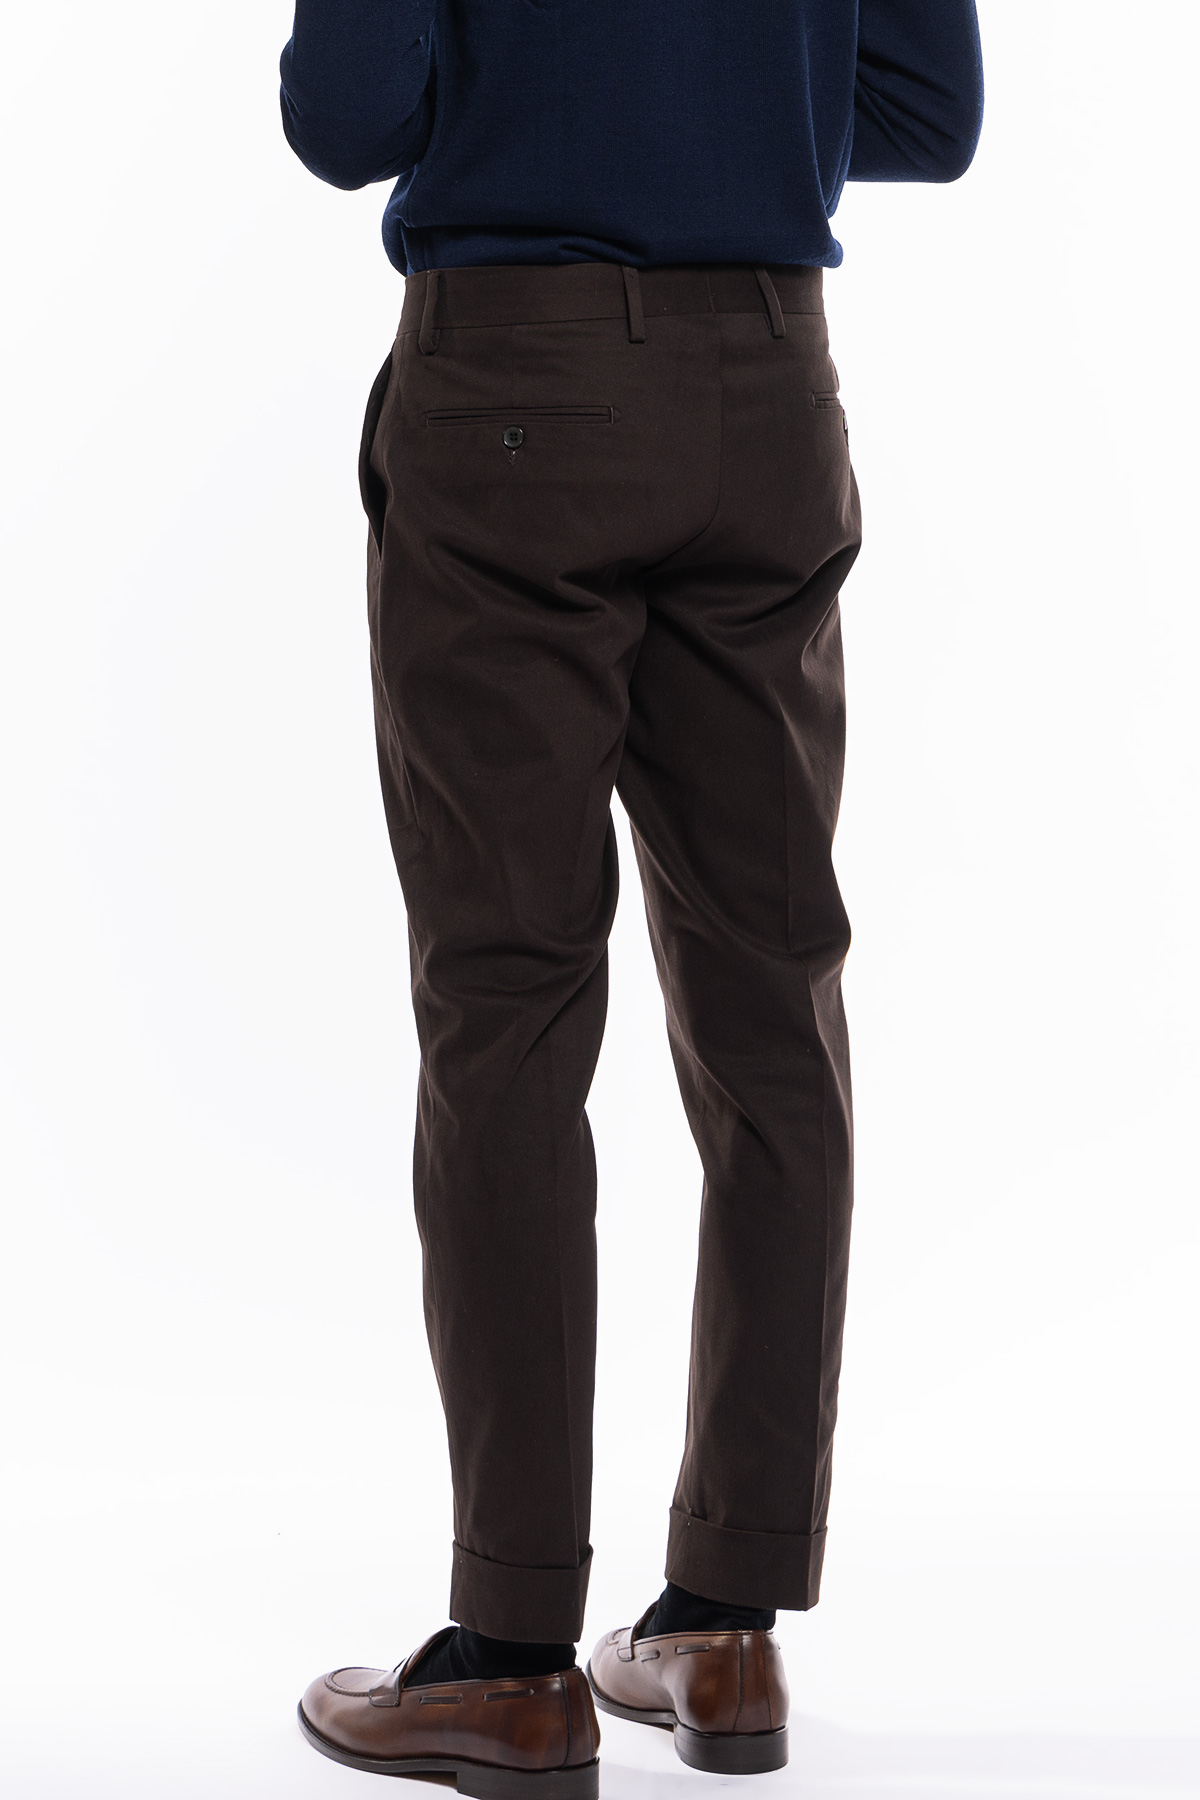 Pantalone uomo marrone tasca america in cotone slim fit con risvolto di 5cm